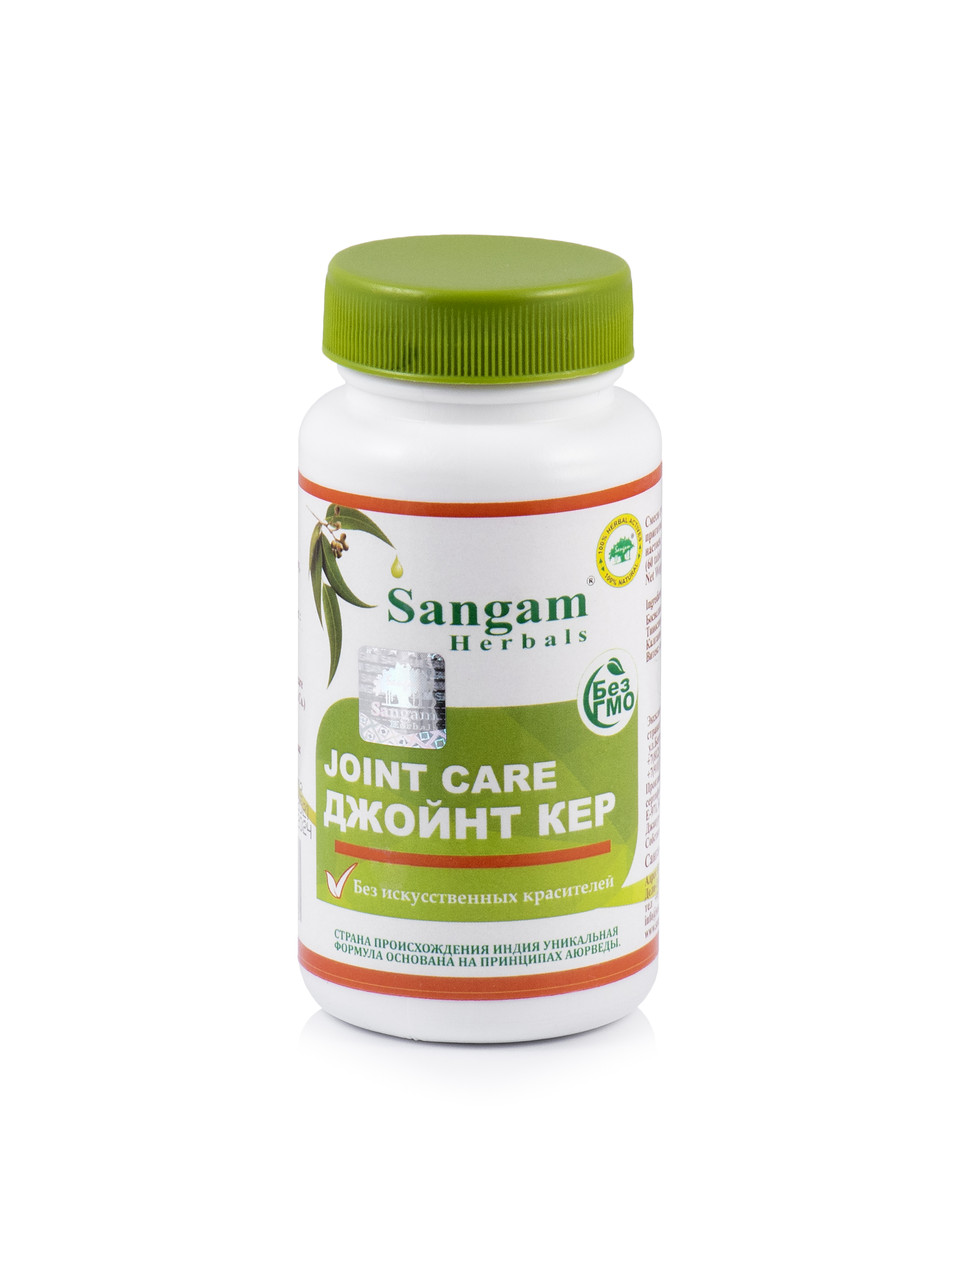 Джойнт Кер (Joint Care) Sangam Herbals, 60 таб, устраняет воспаления, болезненность, отечность суставов